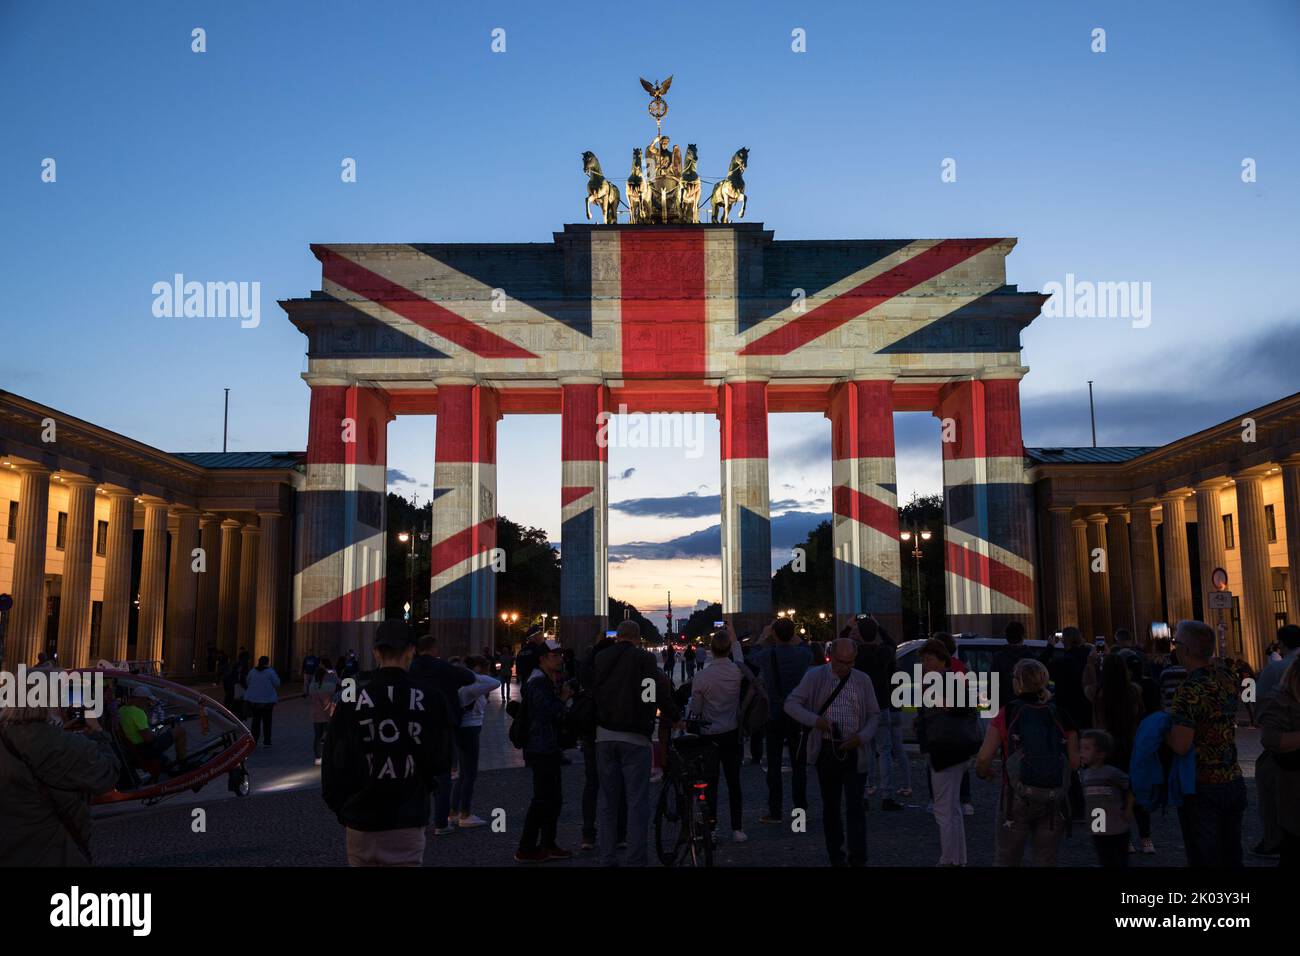 Nella capitale tedesca di Berlino, la porta di Brandeburgo è stata illuminata con la bandiera dell'Unione la sera del 9 settembre 2022, in lutto della regina Elisabetta II Molte persone si sono riunite a Pariser Platz per esprimere la loro solidarietà. La regina Elisabetta II aveva guidato attraverso la porta di Brandeburgo nel 2015 con il principe Filippo nella sua limousine dopo aver detto Arrivederci a Pariser Platz. La regina Elisabetta II arrivò per la prima volta a Berlino, che era ancora divisa all'epoca, nel 1965, come primo capo di stato britannico dopo la seconda guerra mondiale, dove fu accolta da un pubblico di almeno un milione di persone. A quel tempo, lei no Foto Stock